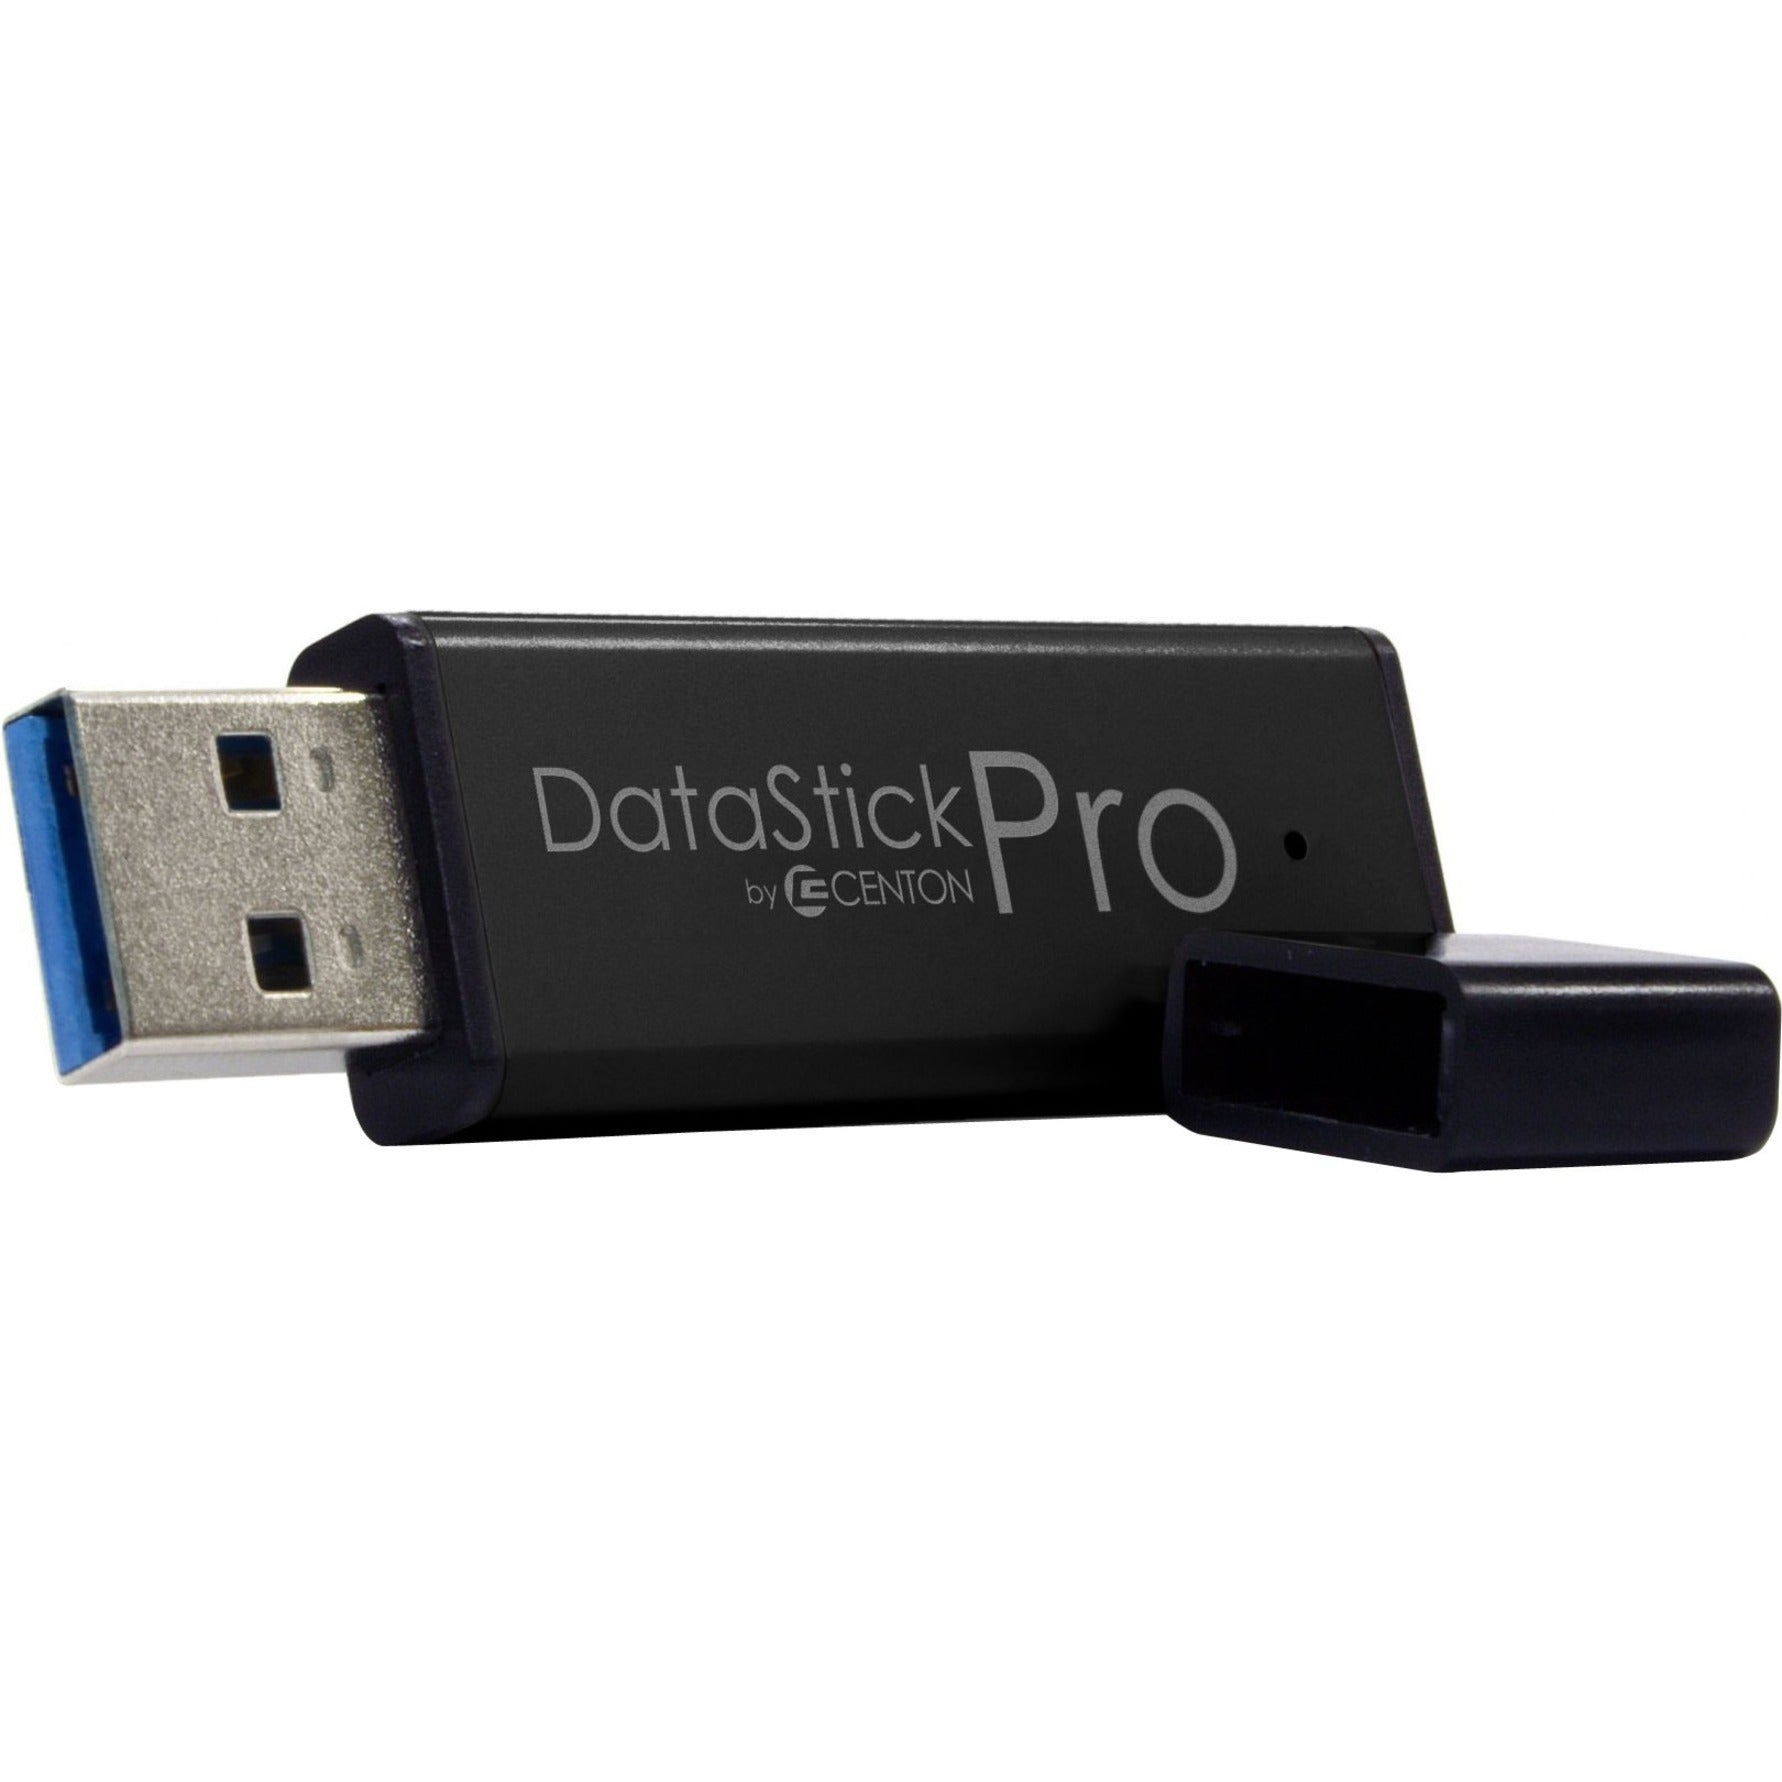 Marca: Centon Centon S1-U3P6-256G MP Essential USB 3.0 Datastick Pro (Negro) 256GB Solución de almacenamiento de alta velocidad